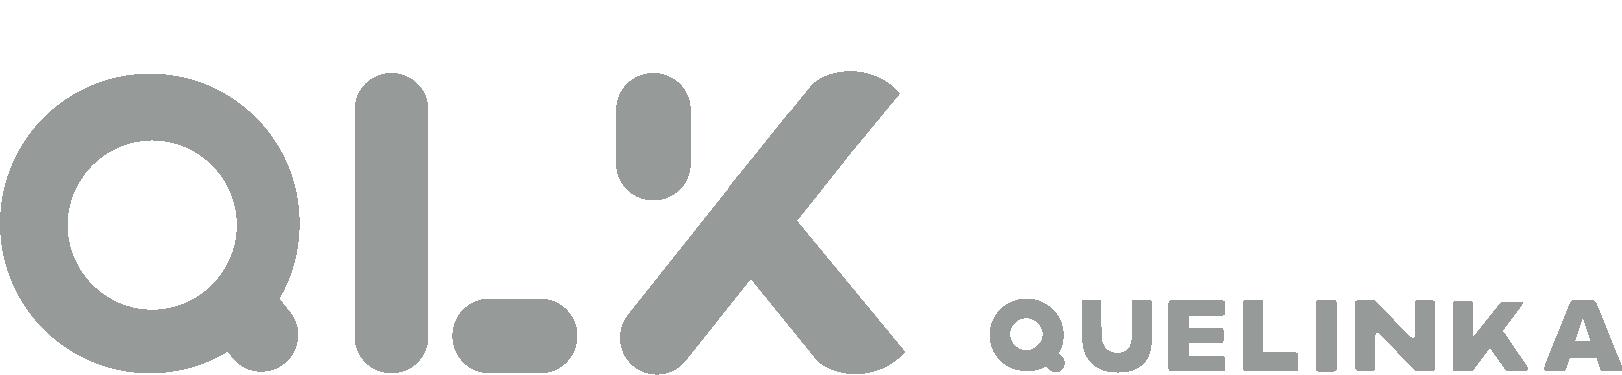 quelinka logo